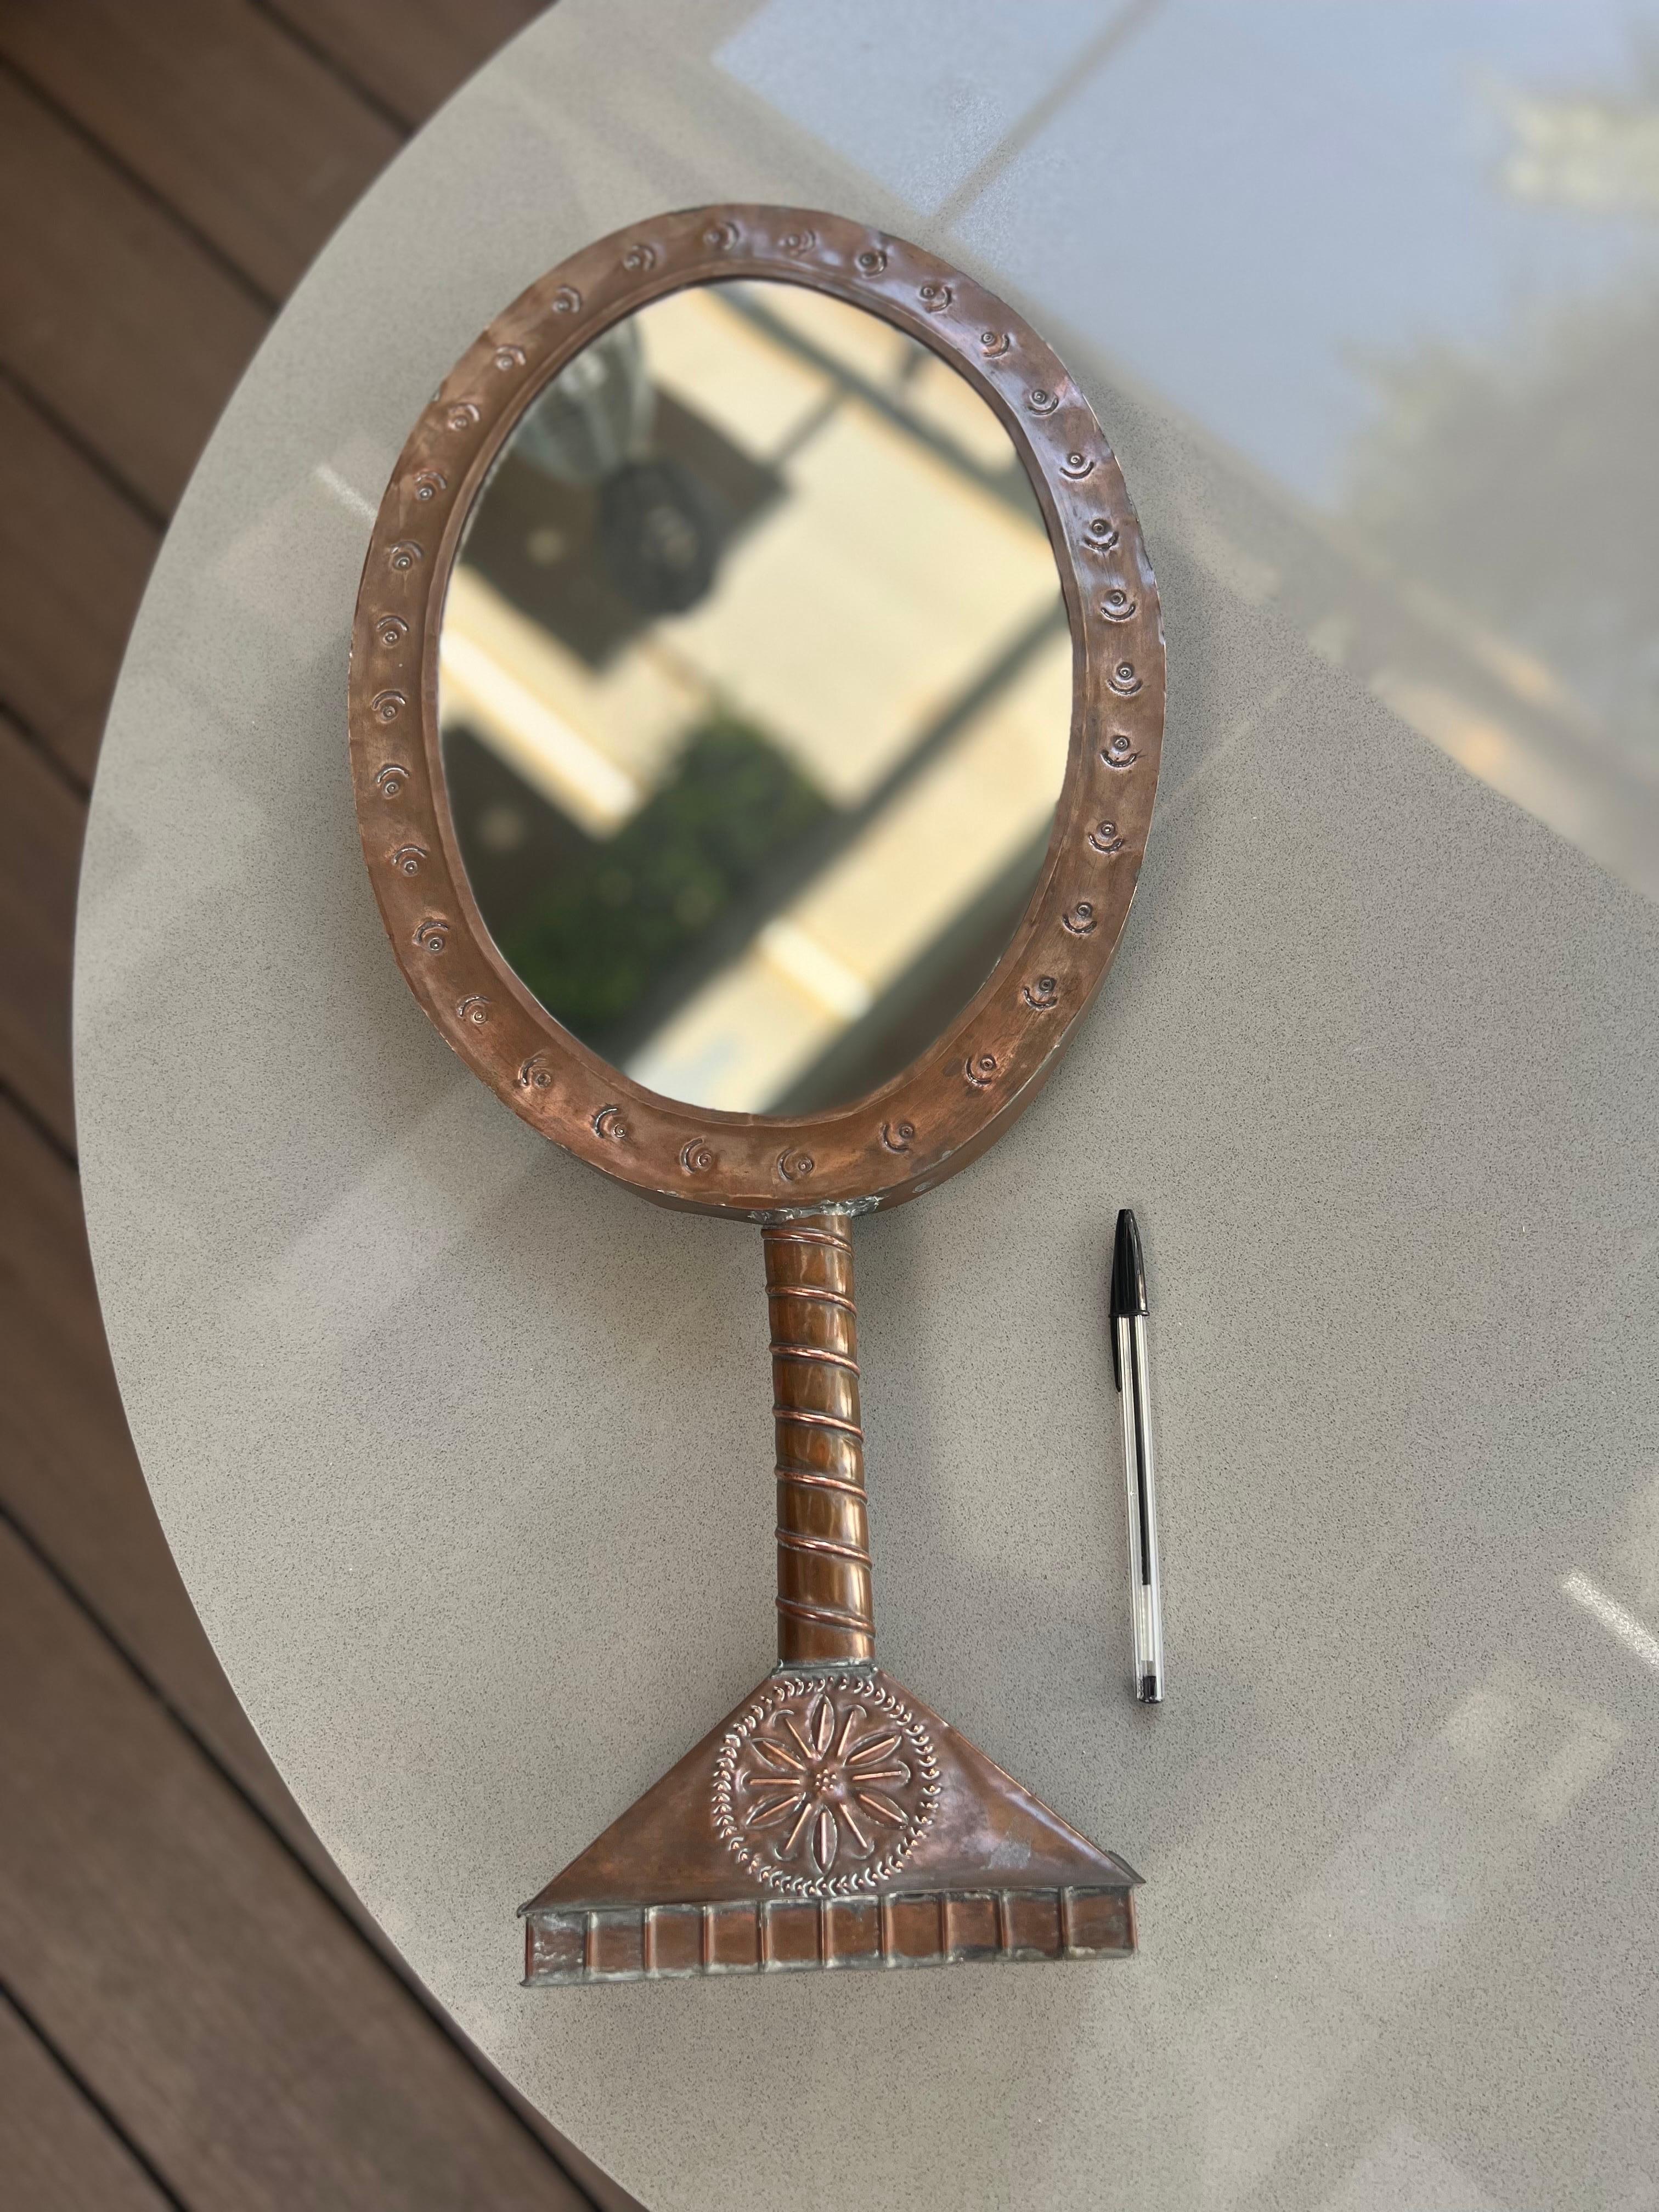 Pour votre considération, l'une de ses premières pièces, ce magnifique miroir de courtoisie en cuivre martelé à la main. Réalisé et signé par Gene Byron, un artiste canadien qui s'est installé à Marfil, Guanajuato, au Mexique.
La propriété où elle